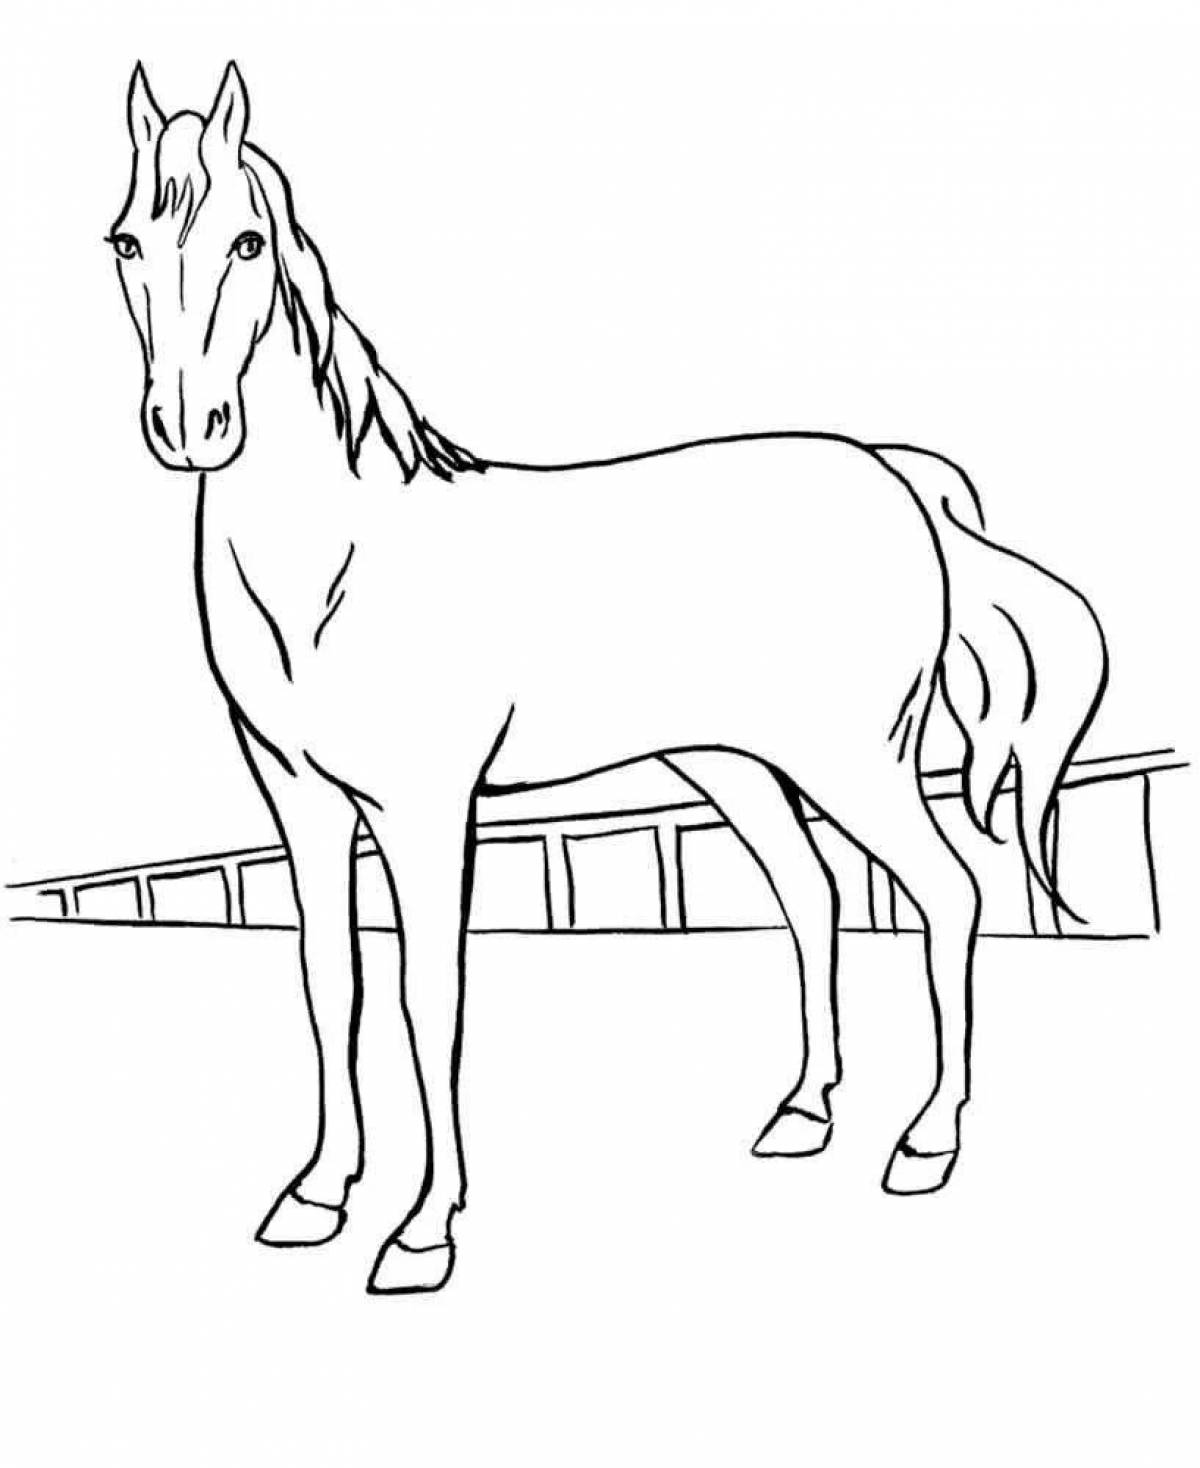 Игривый рисунок лошади для детей